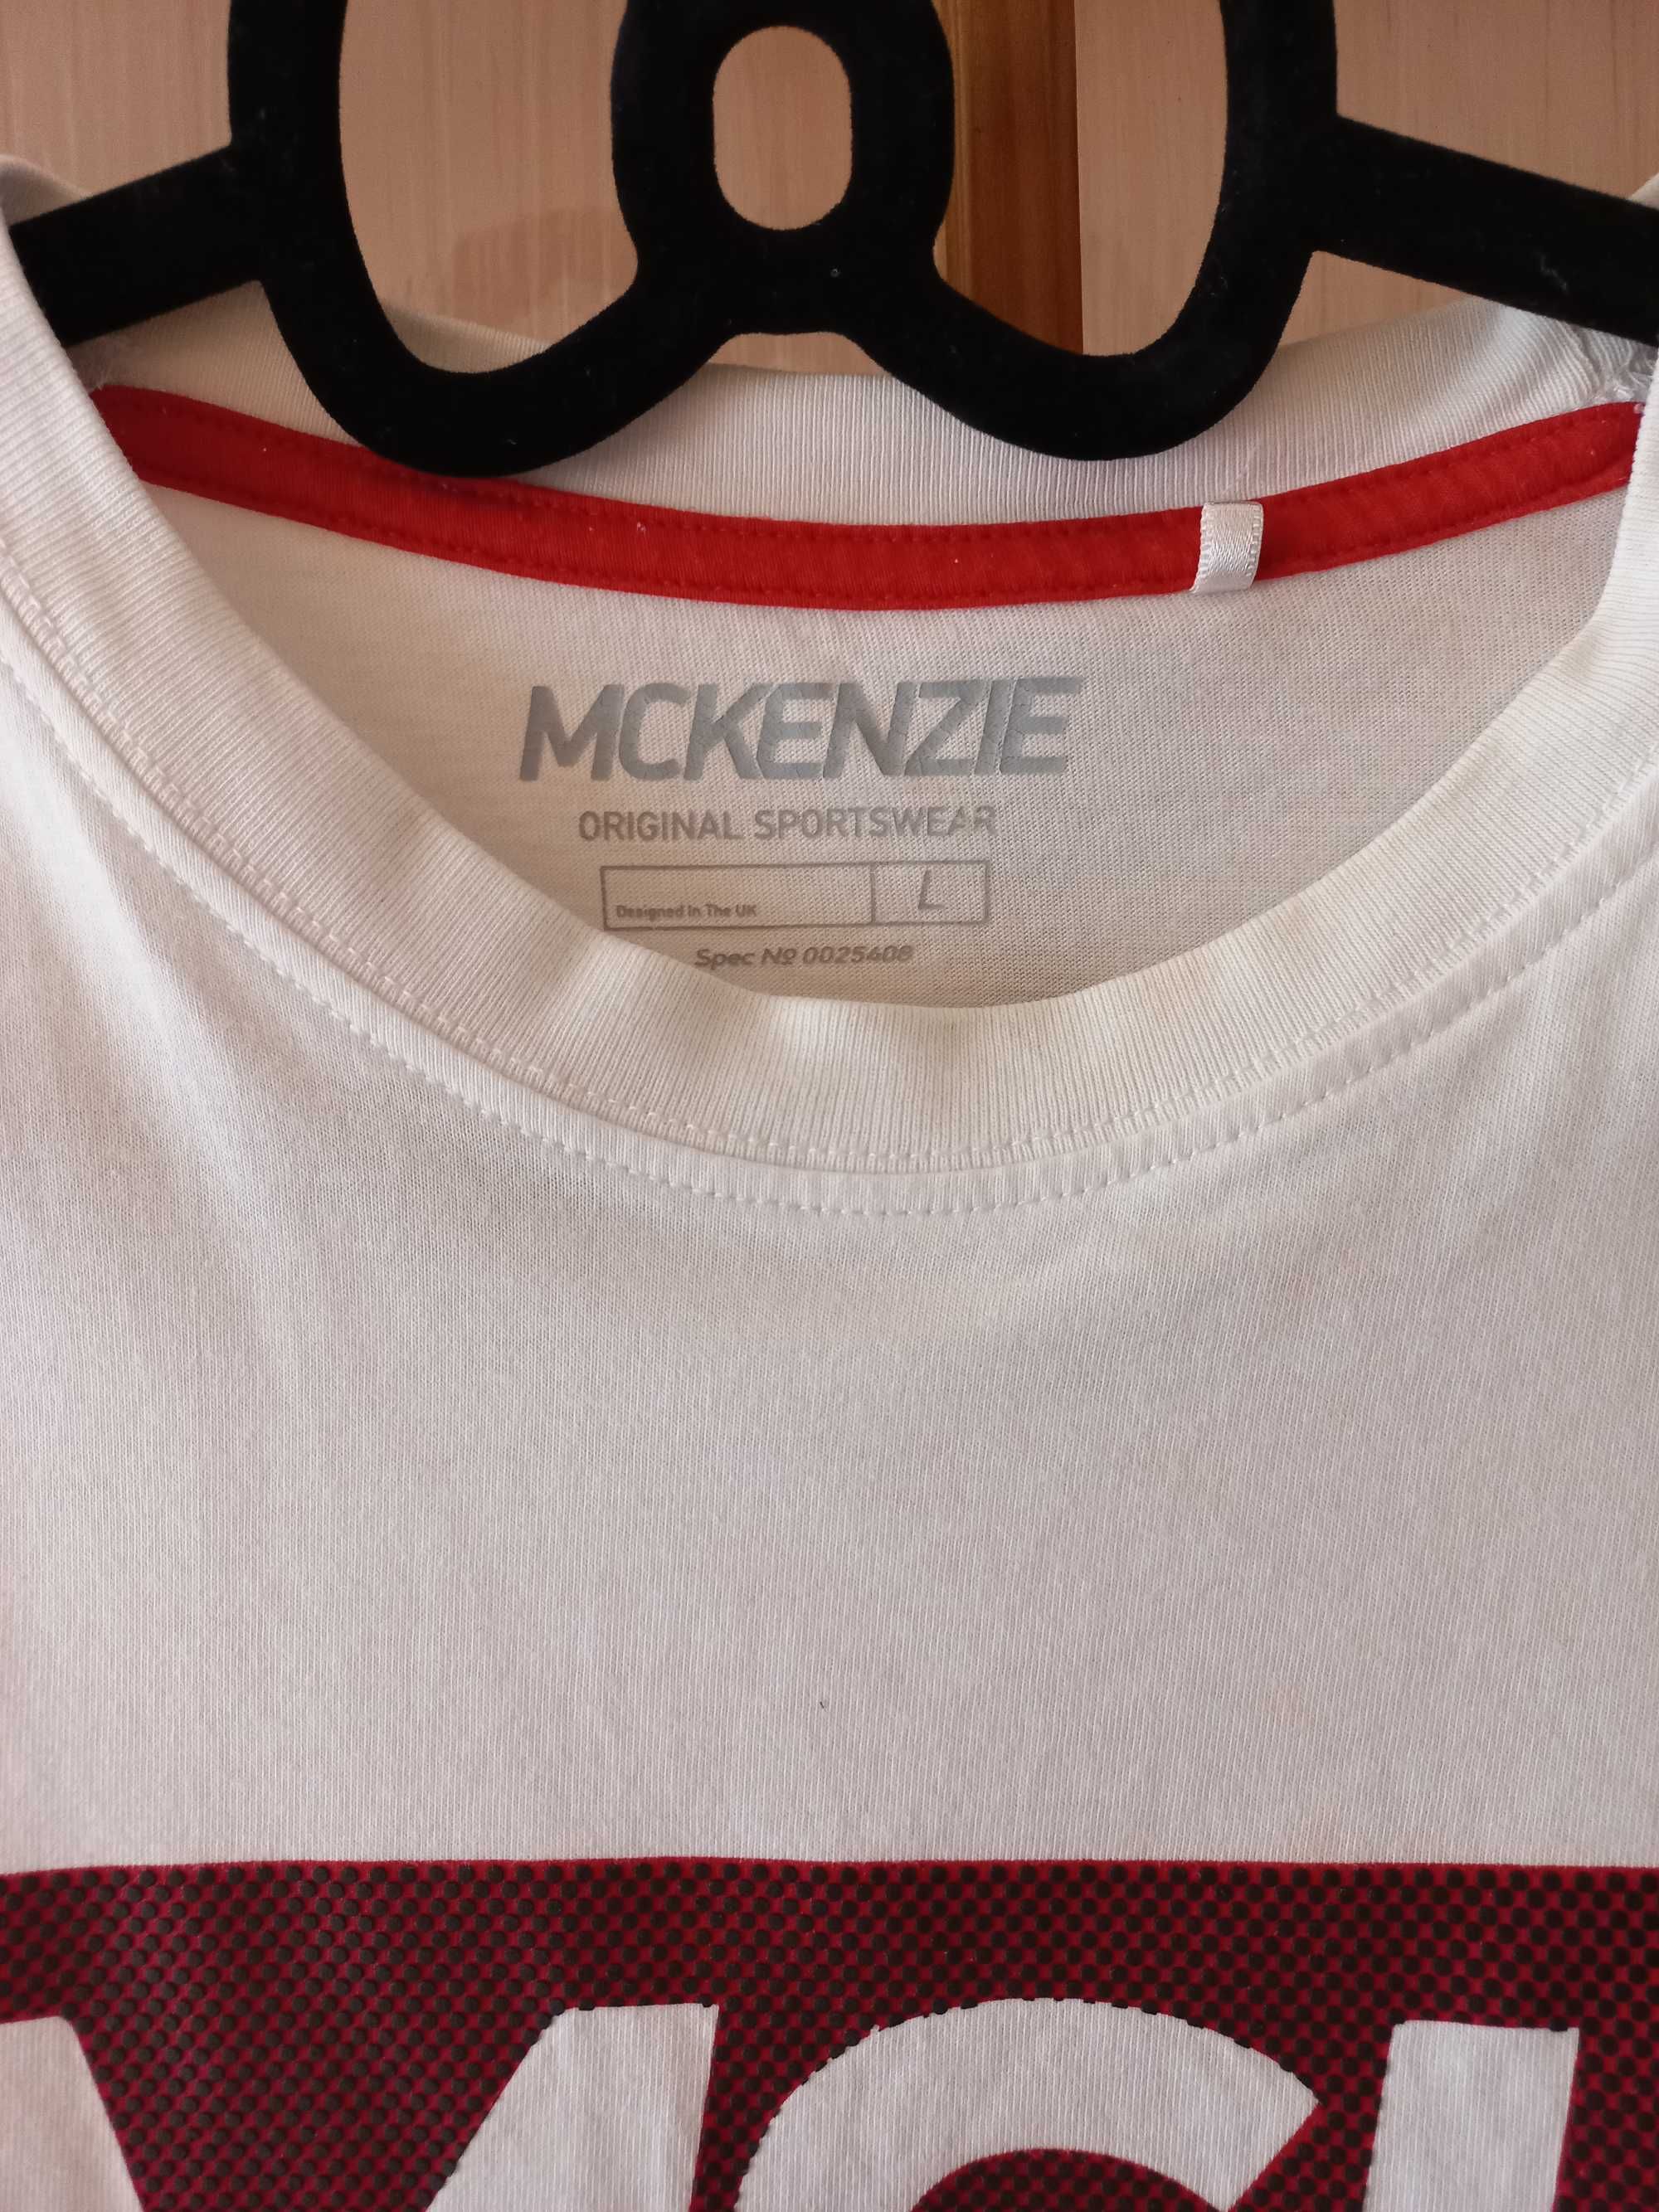 McKenzie T-shirt koszulka sportowa  męska rozmiar L - biała